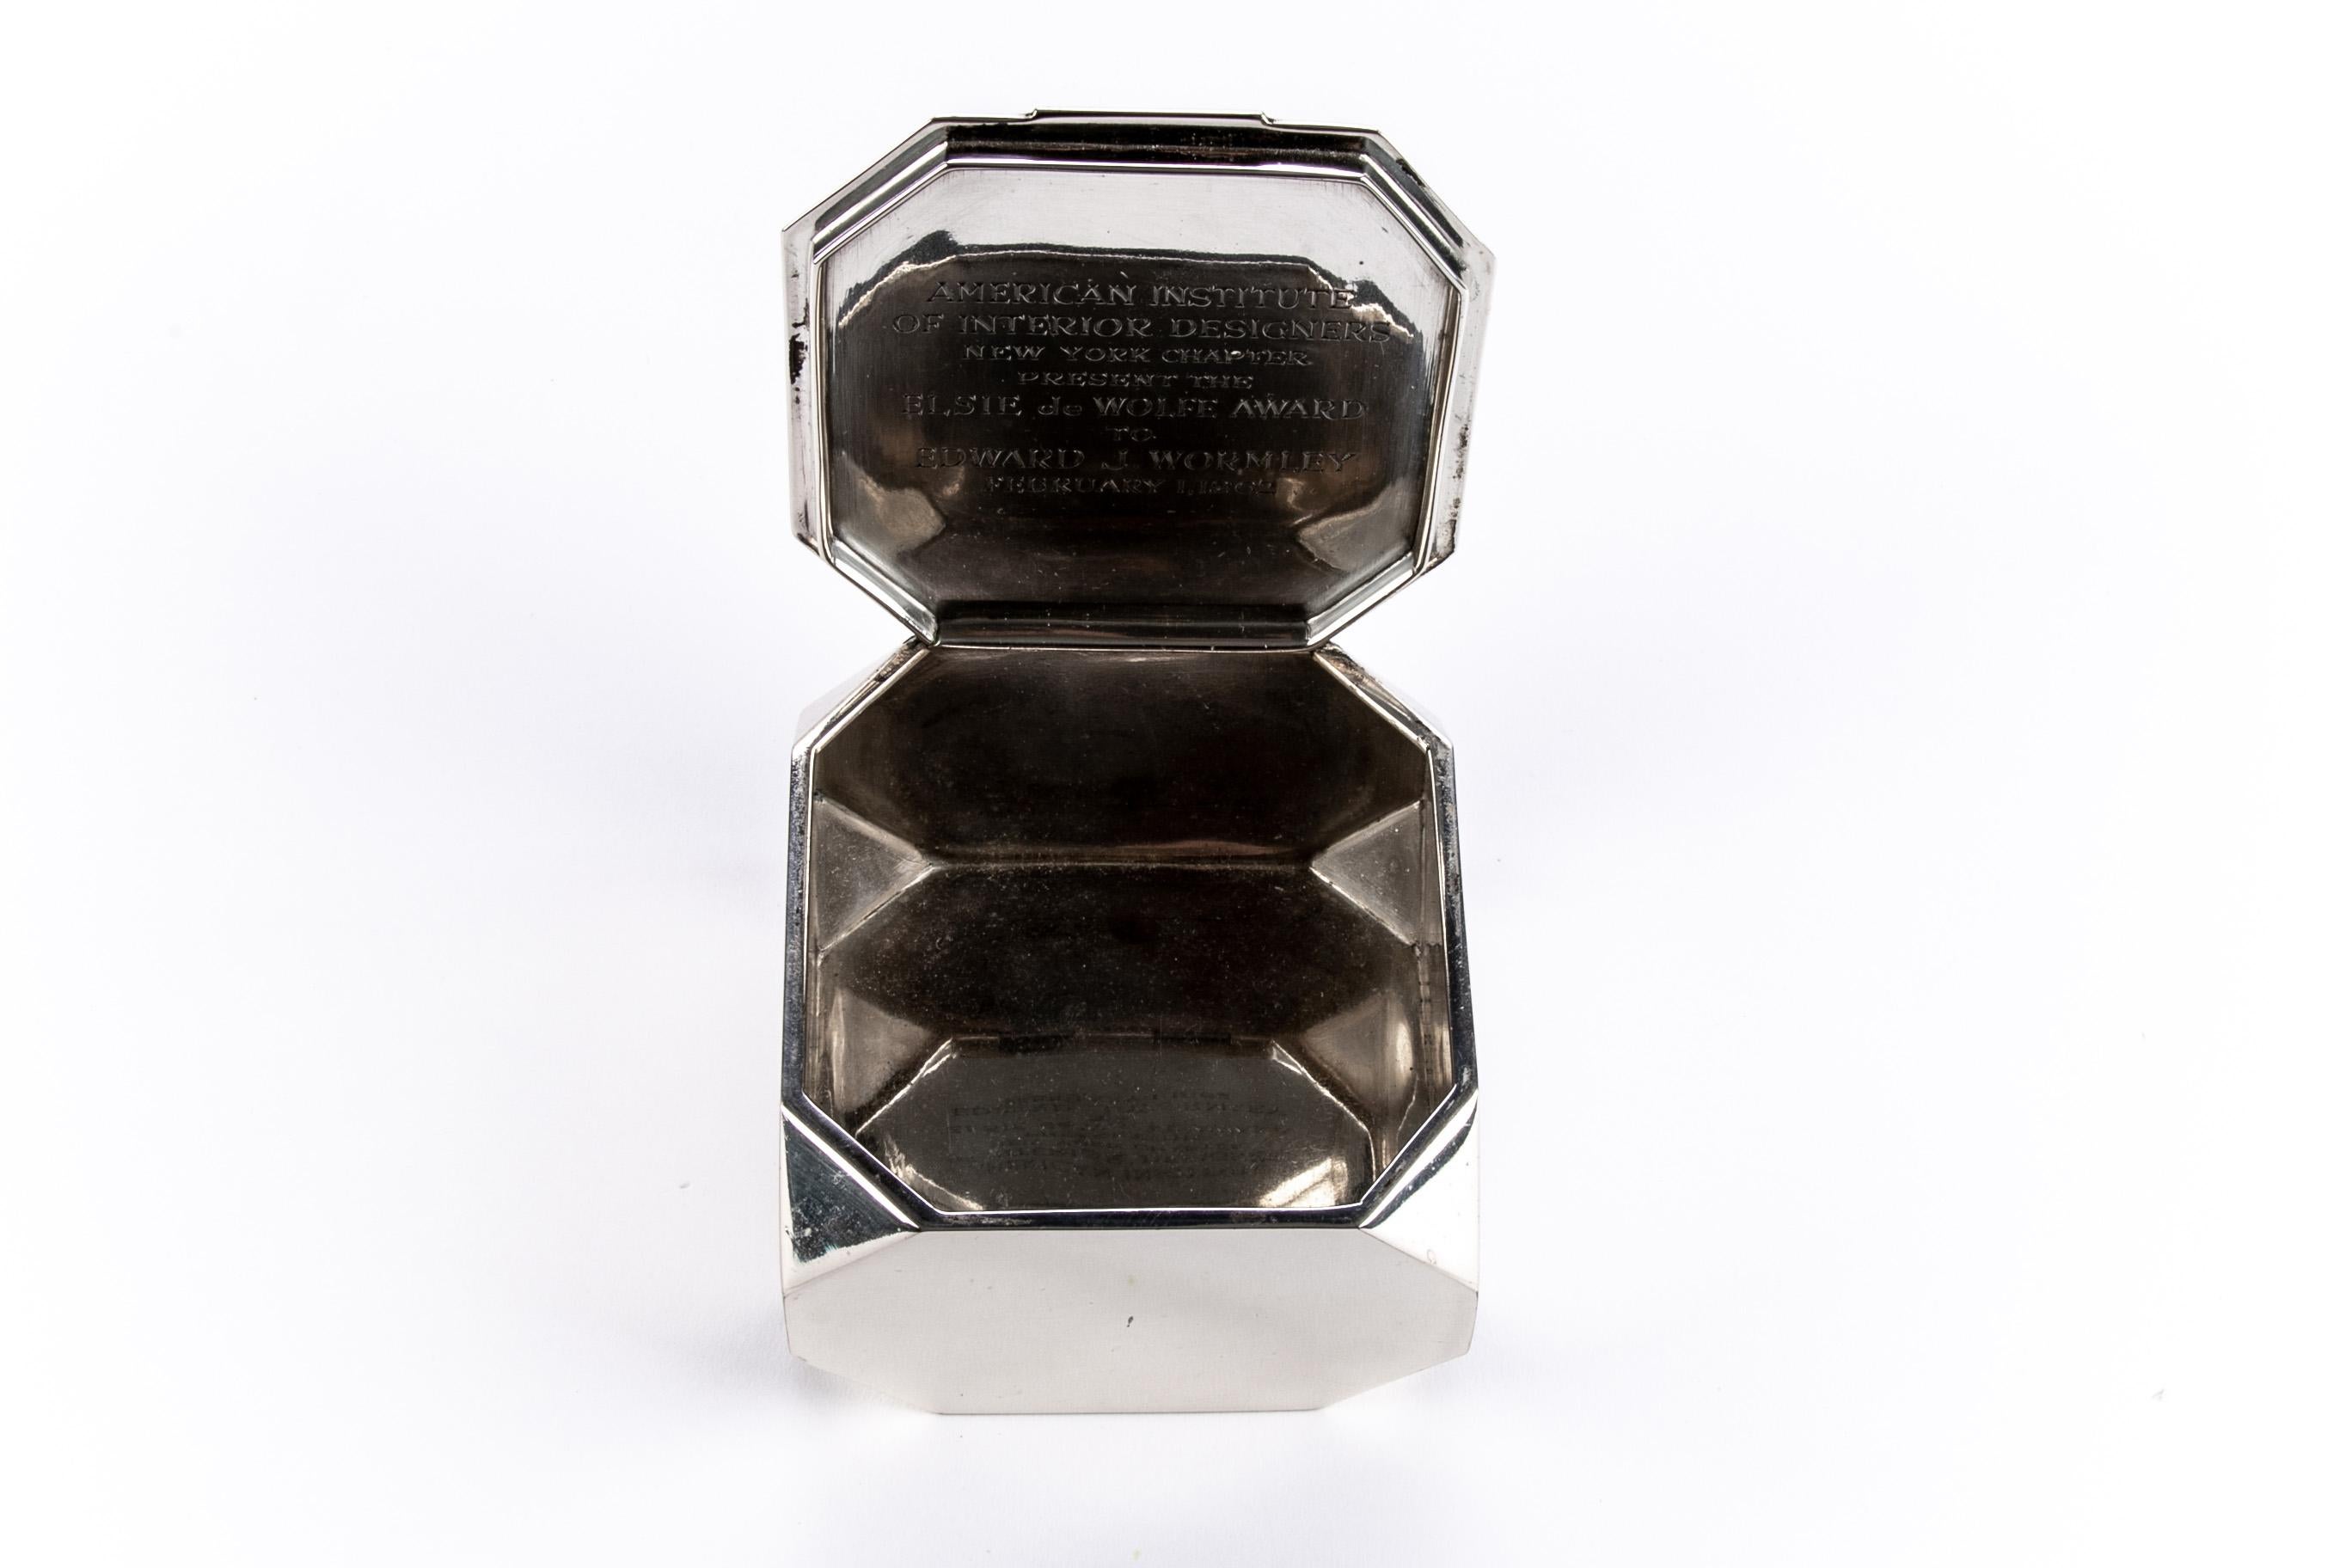 Mid-Century Modern Tiffany & Co. Sterling Silver Edward J. Wormley Presentation Award Box